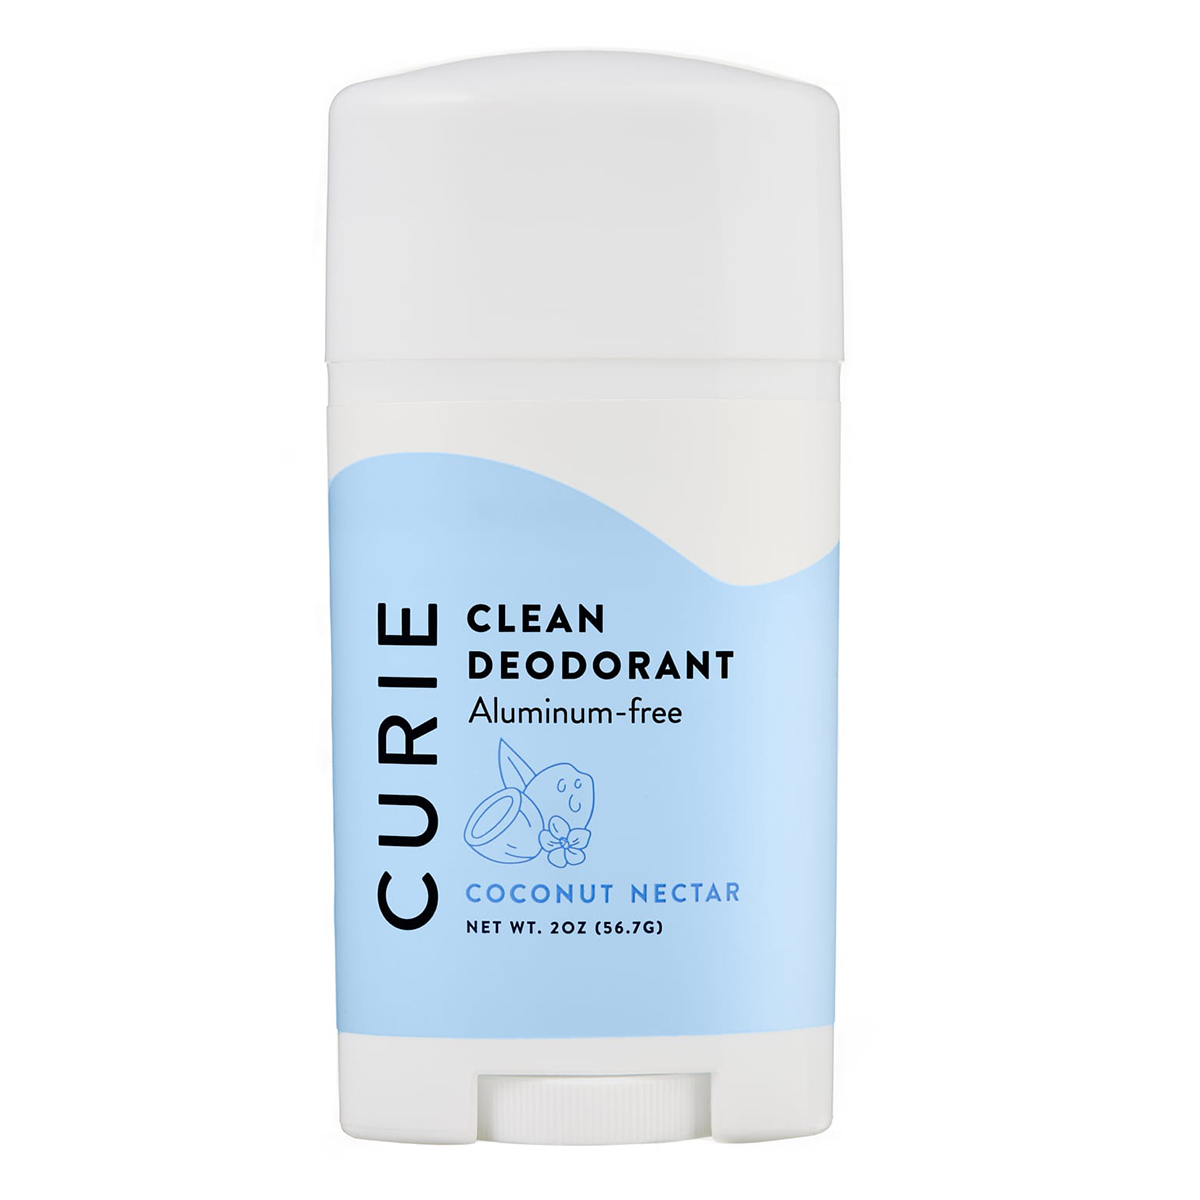 Curie + Natural Deodorant